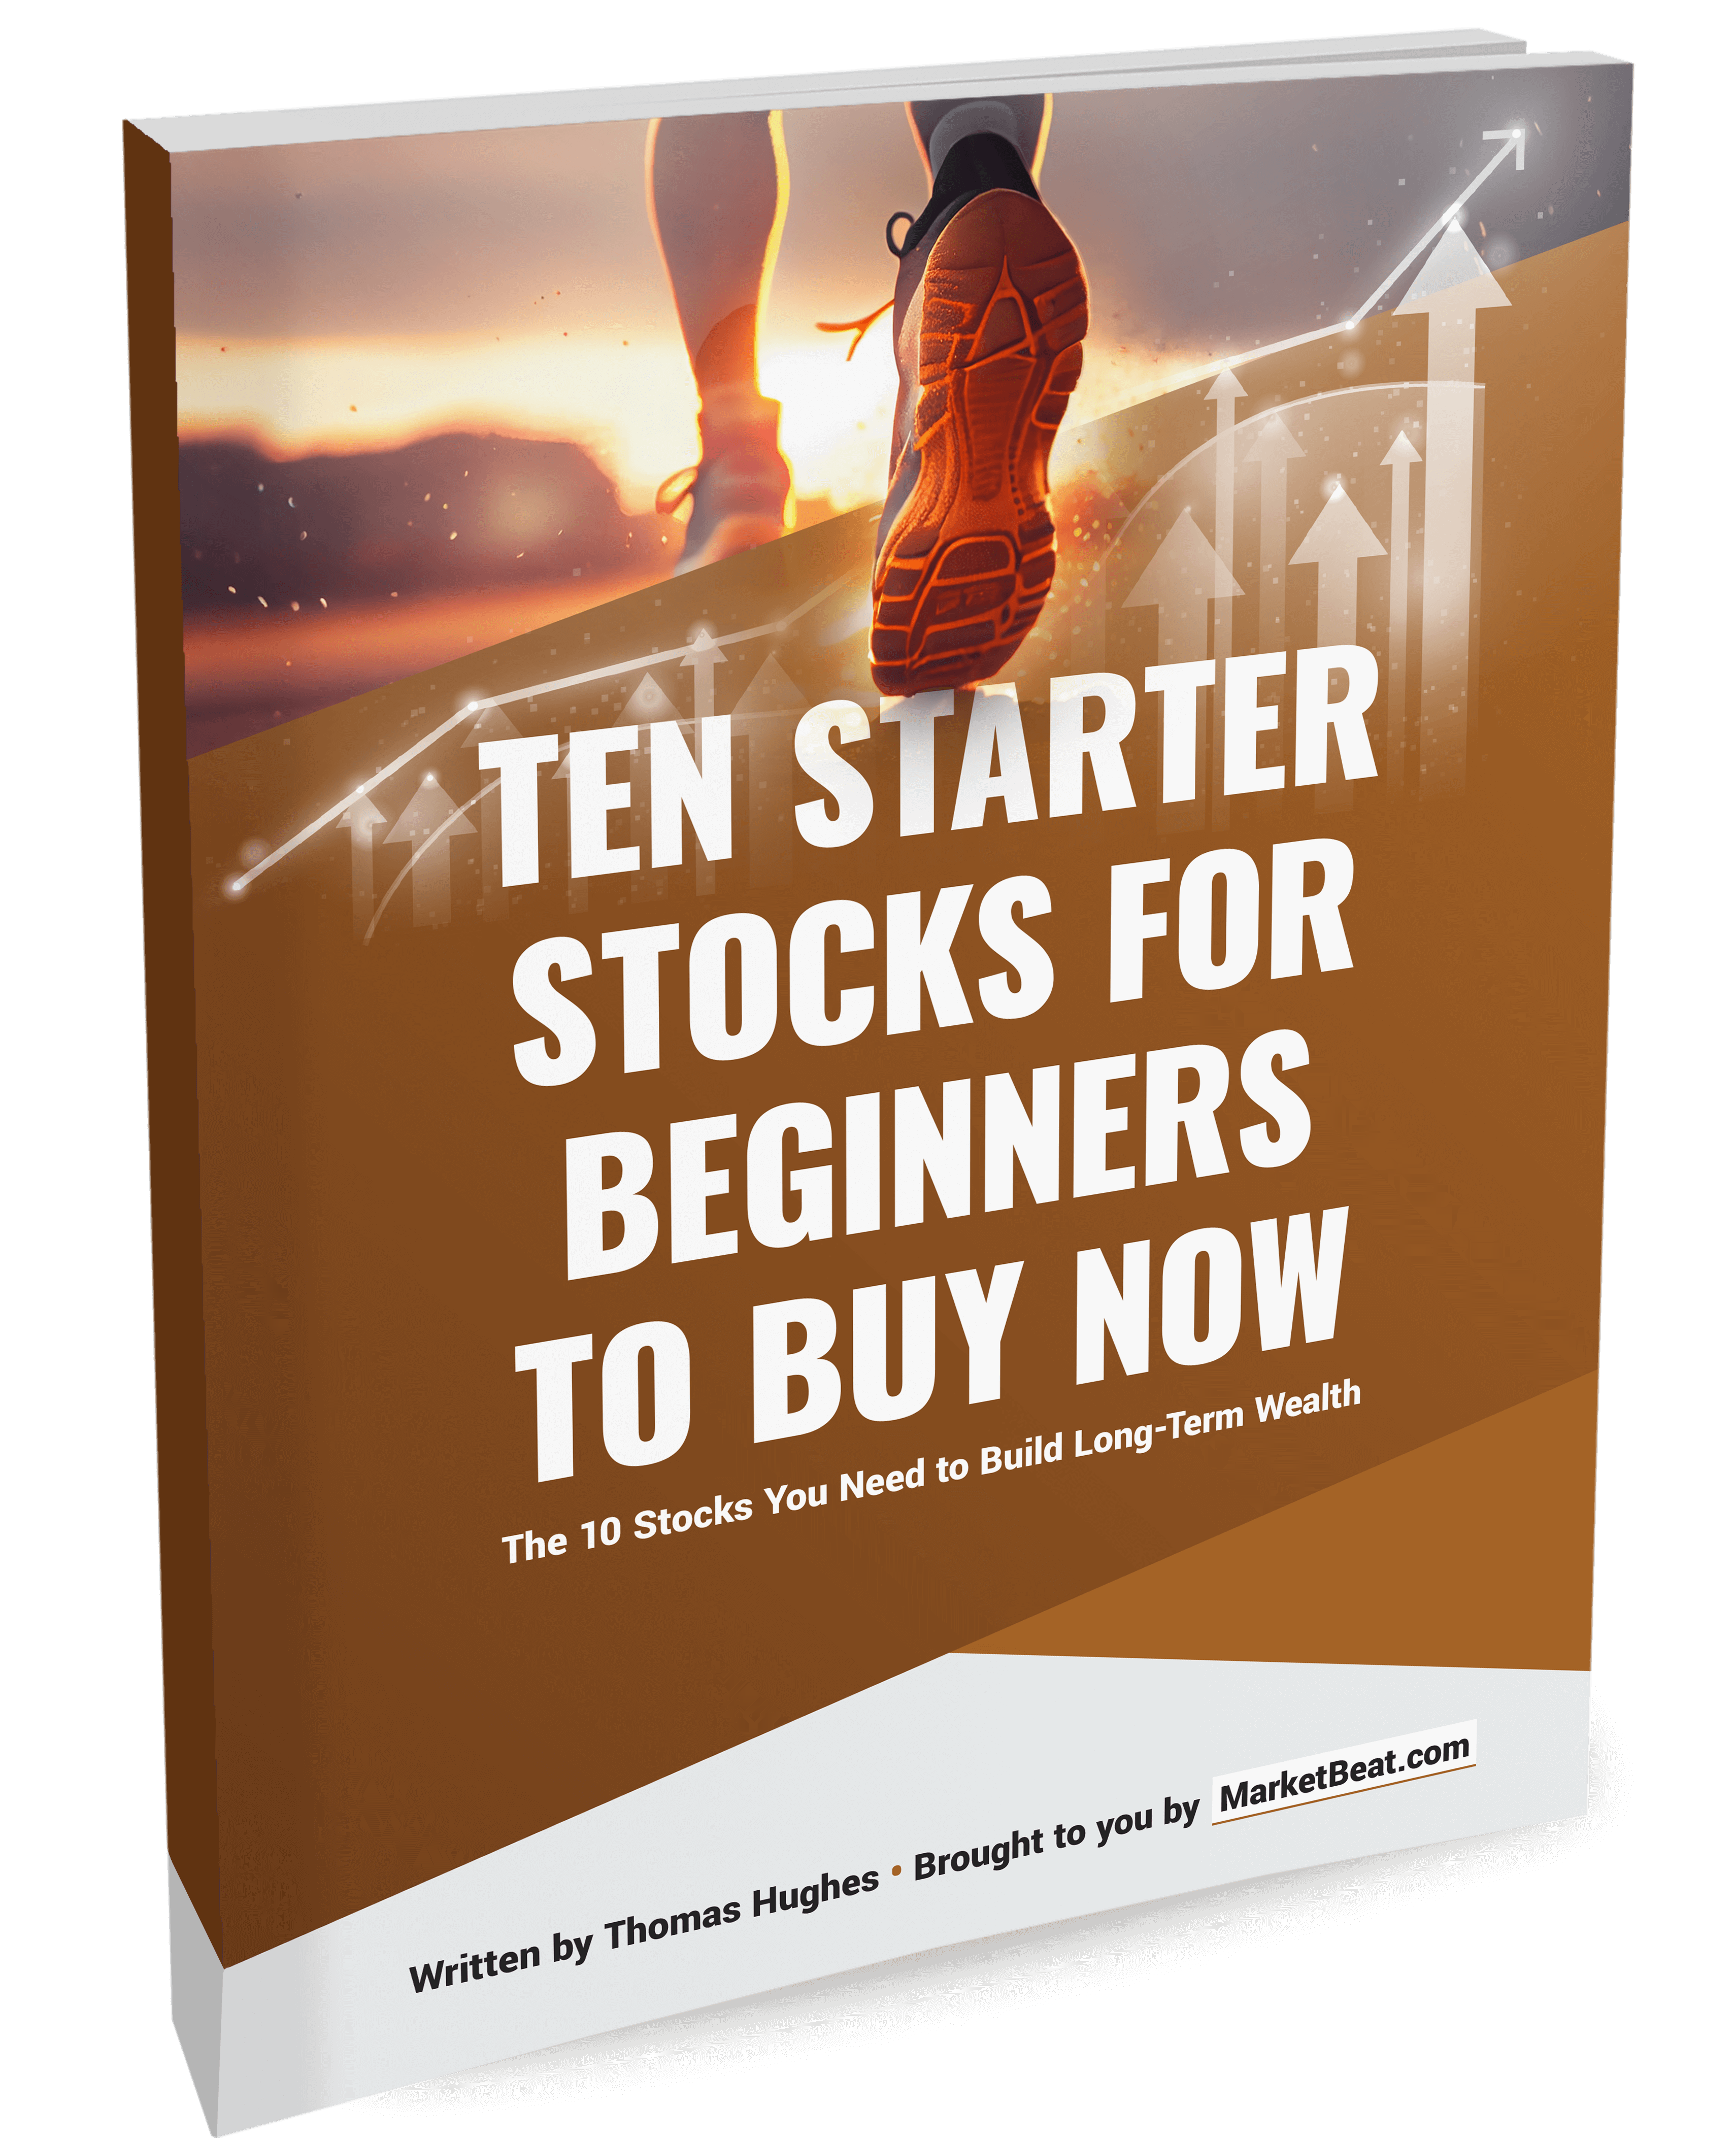 Ten beginner stocks for beginners to buy cover now